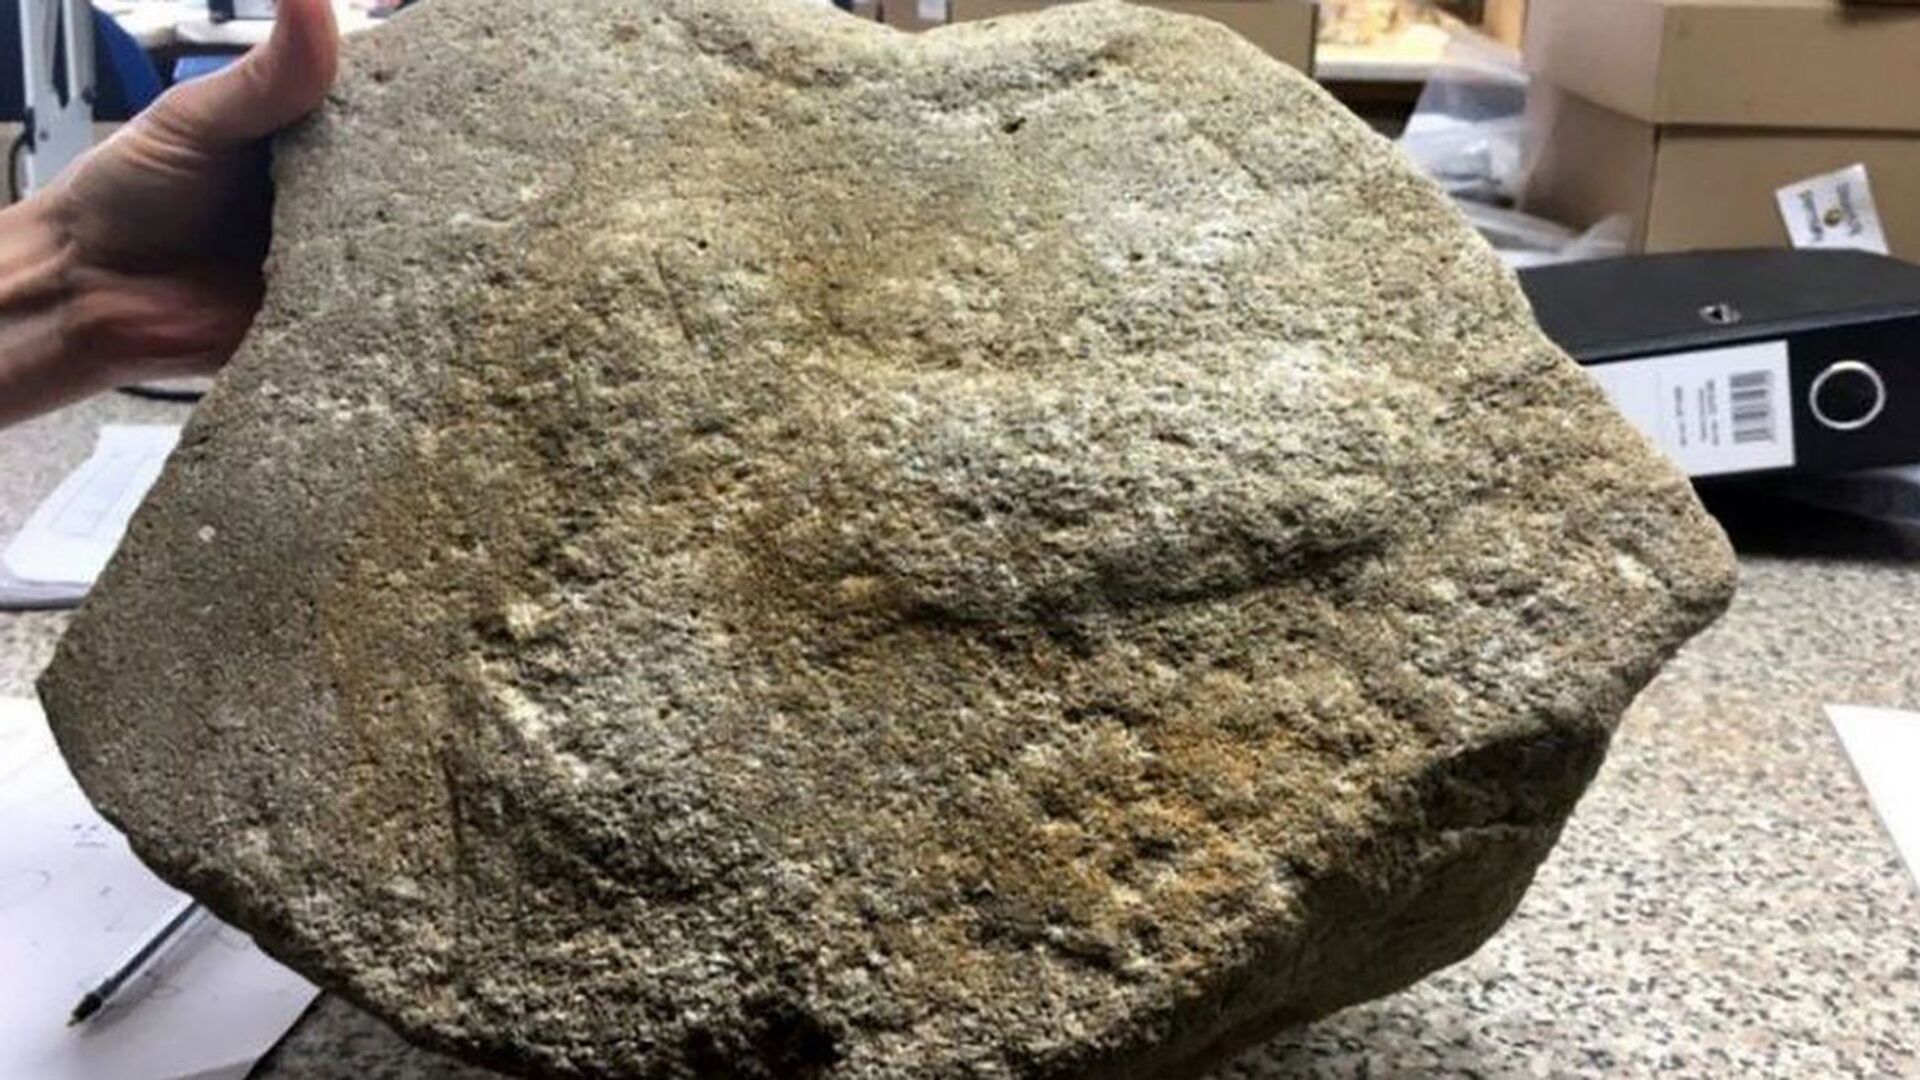 Antiga relíquia romana com órgão genital de 2 mil anos é encontrada no Reino Unido (FOTO) - Sputnik Brasil, 1920, 19.02.2021